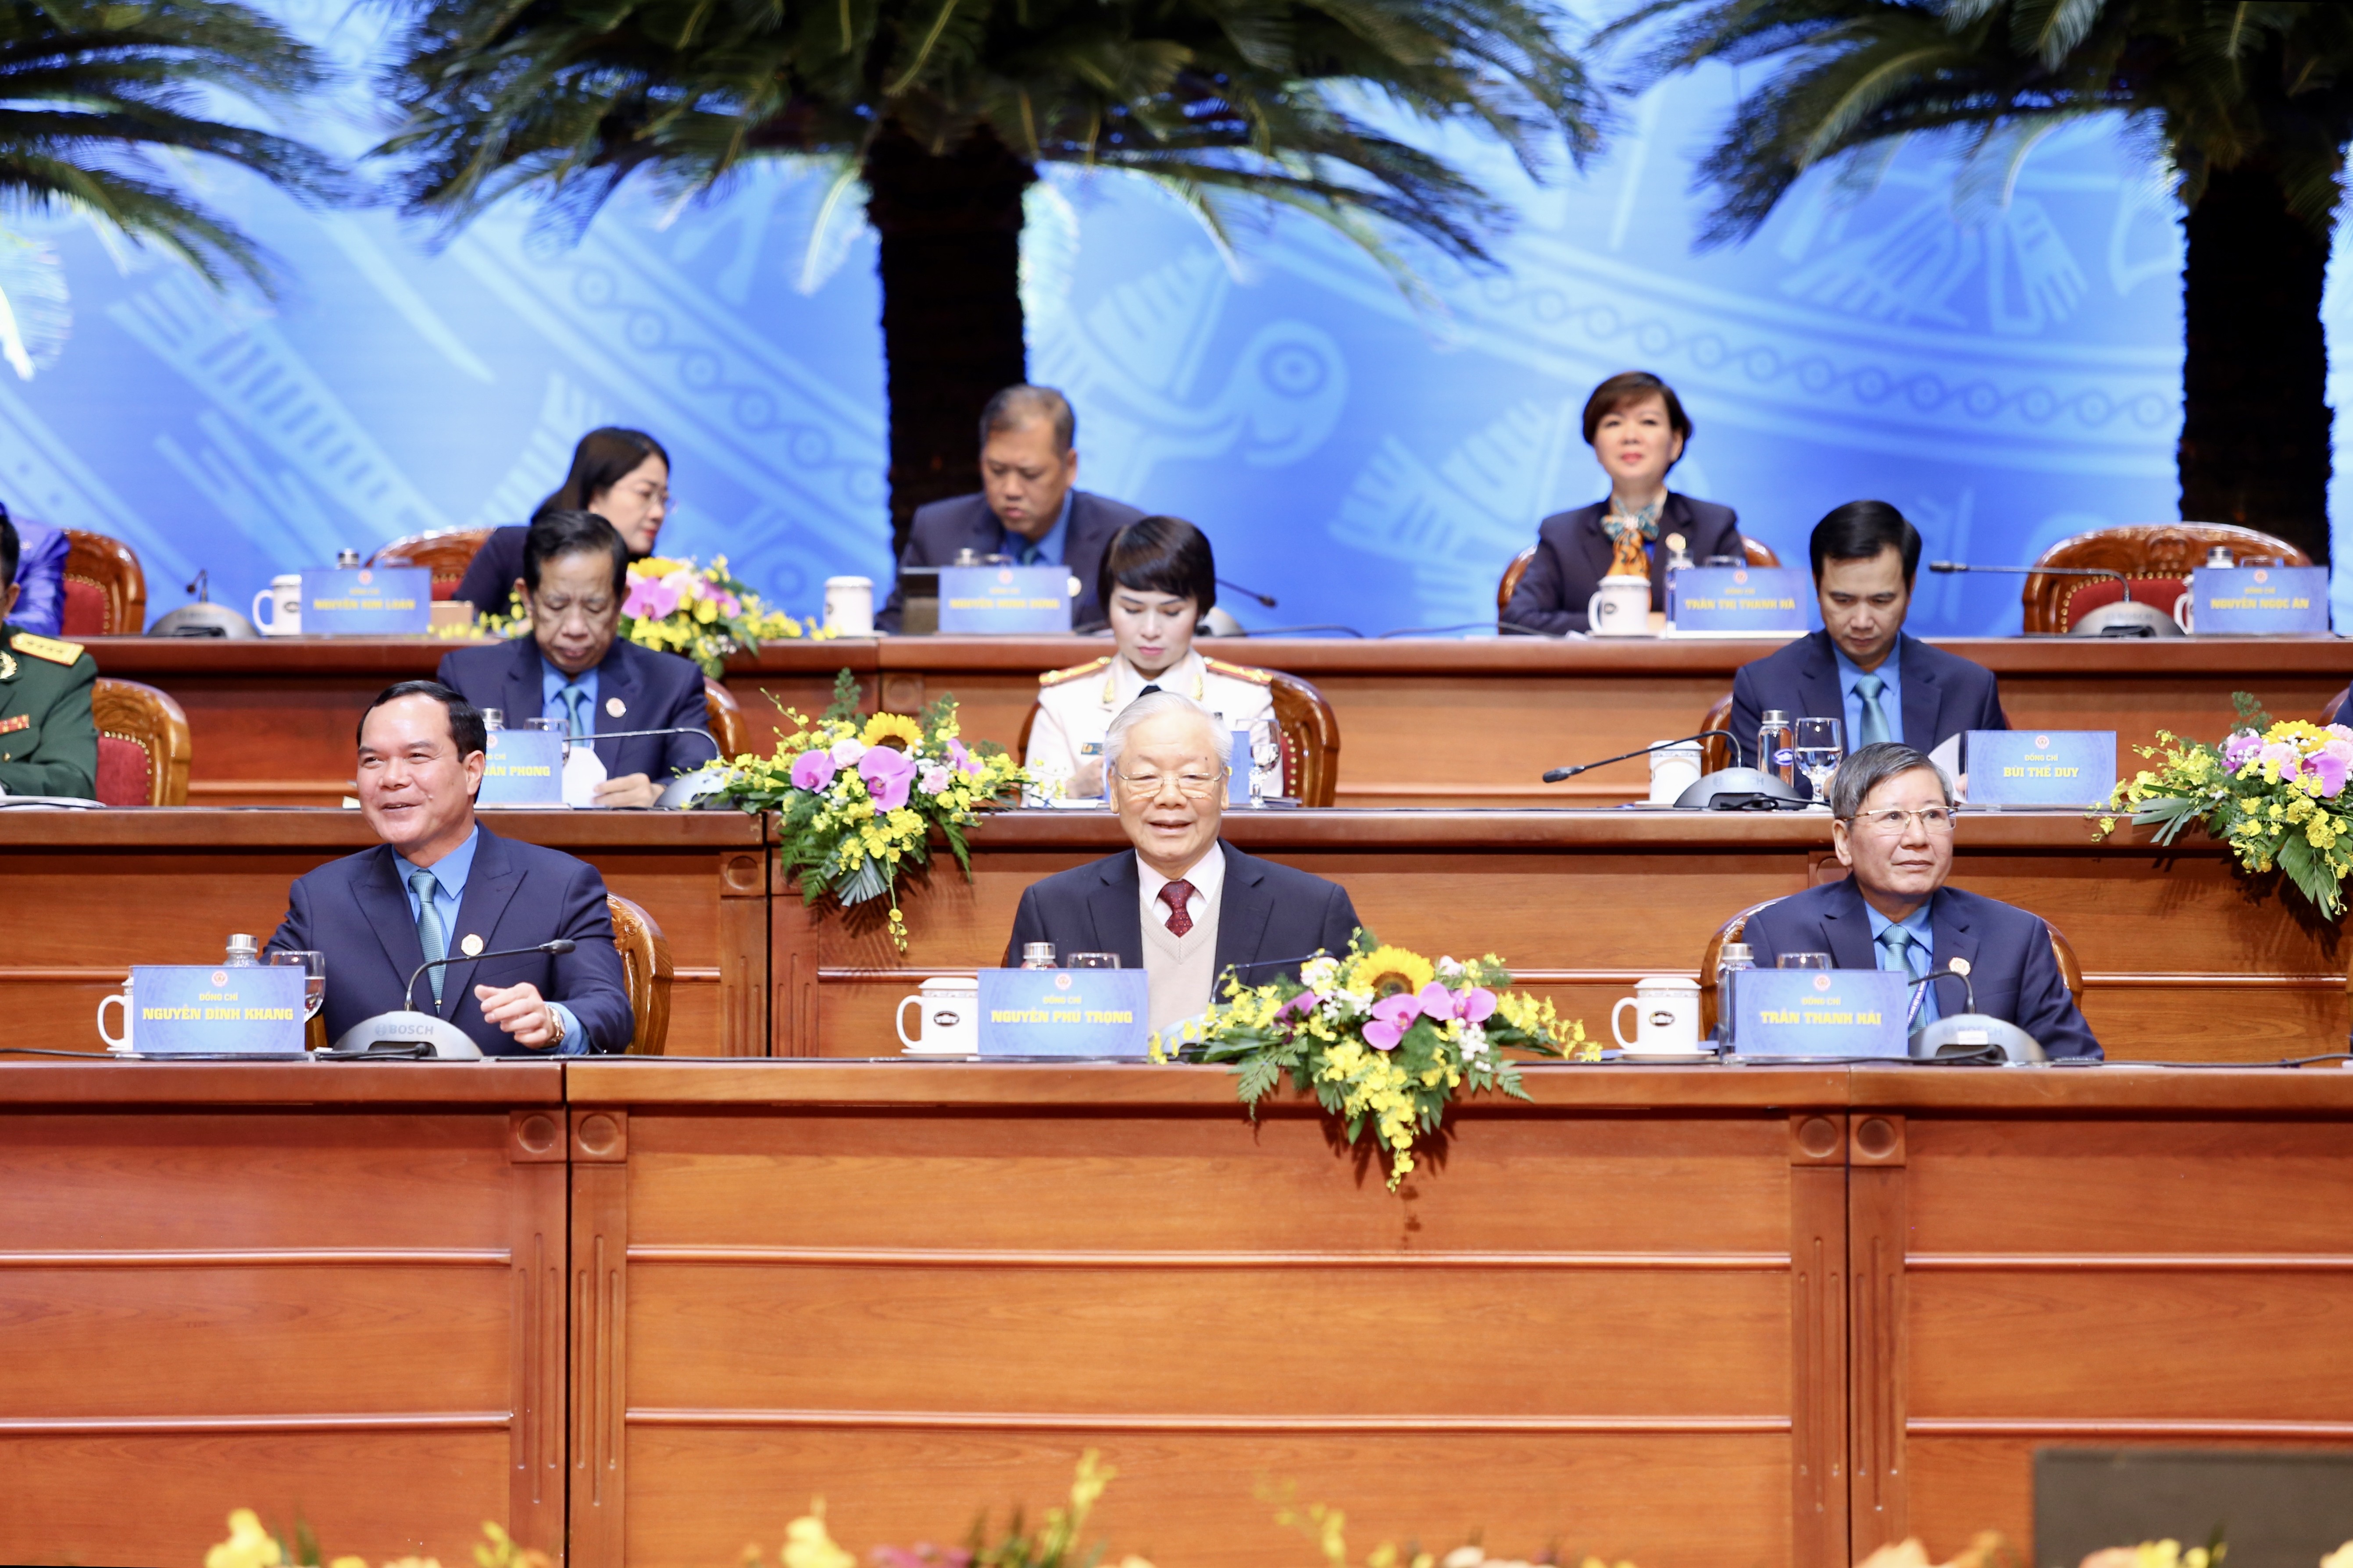 Đại hội XIII Công đoàn Việt Nam vinh dự đón Tổng Bí thư Nguyễn Phú Trọng và các đồng chí lãnh đạo Đảng, Nhà nước tham dự.